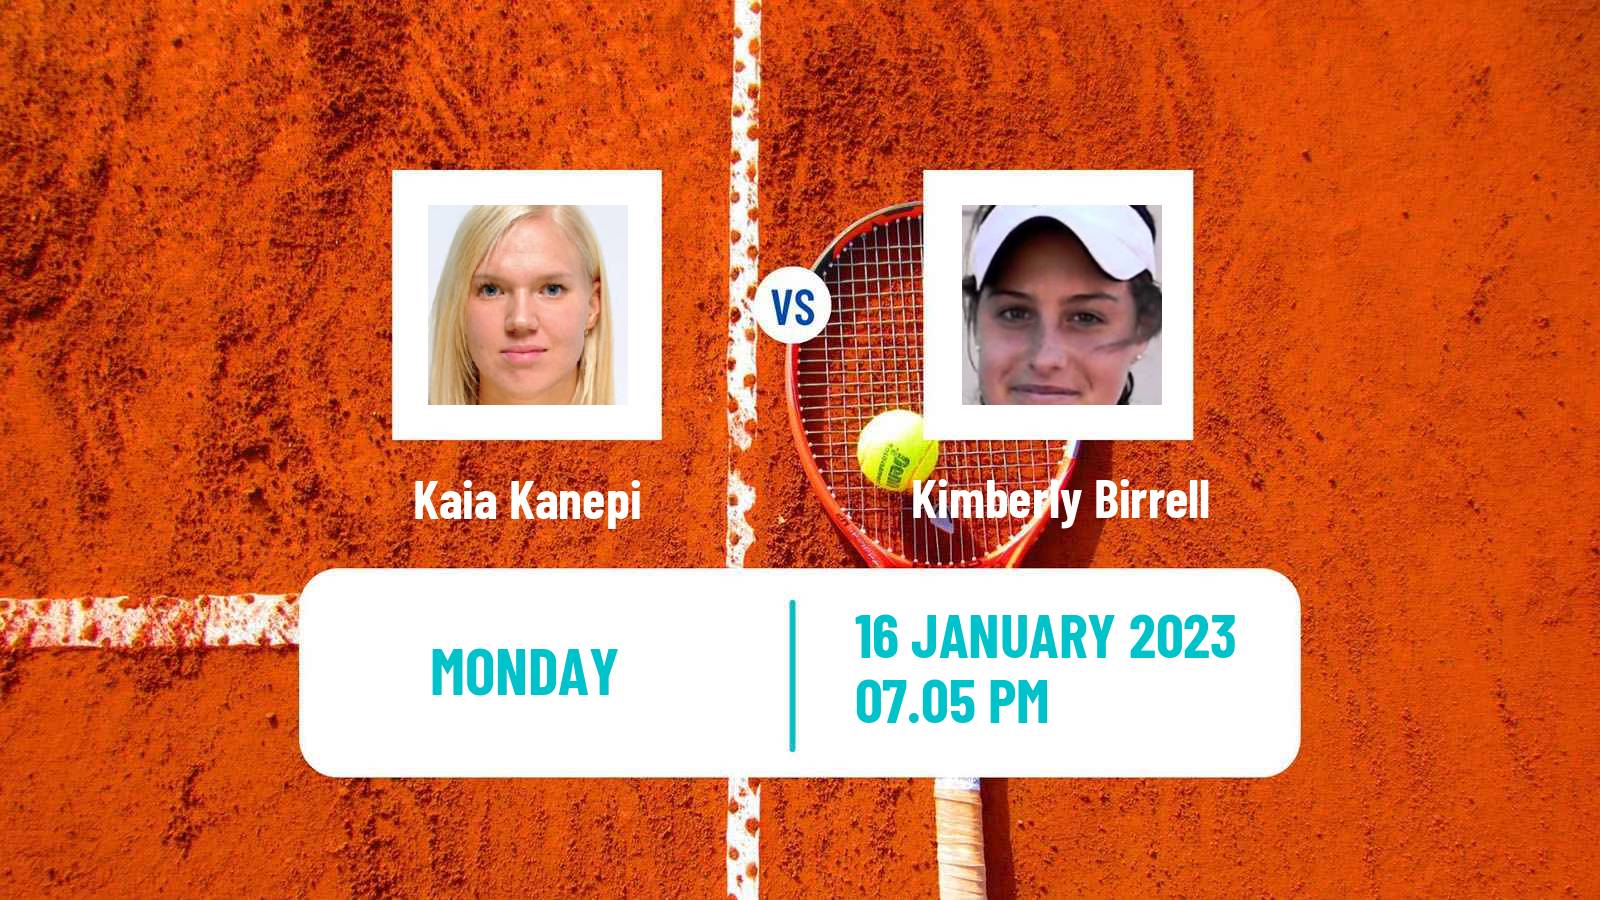 Tennis WTA Australian Open Kaia Kanepi - Kimberly Birrell